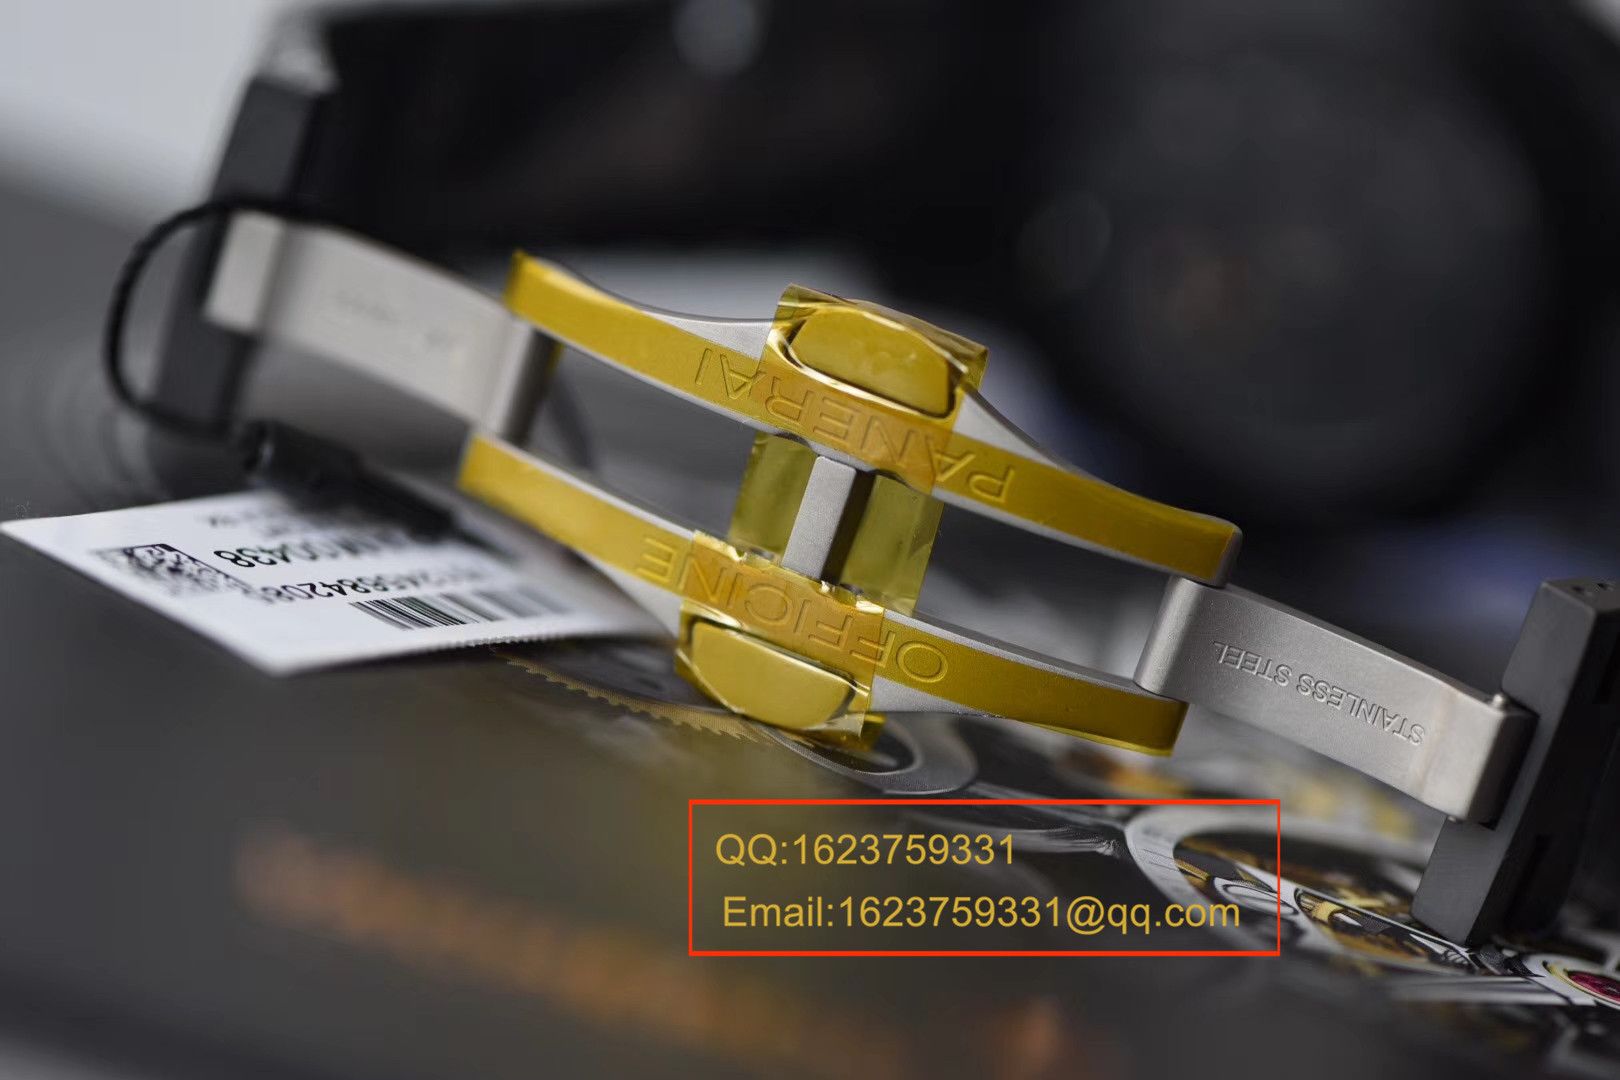 【视频评测VS一比一超A高仿手表】沛纳海LUMINOR 1950系列PAM00438全陶瓷腕表 / VSBFPAM00438